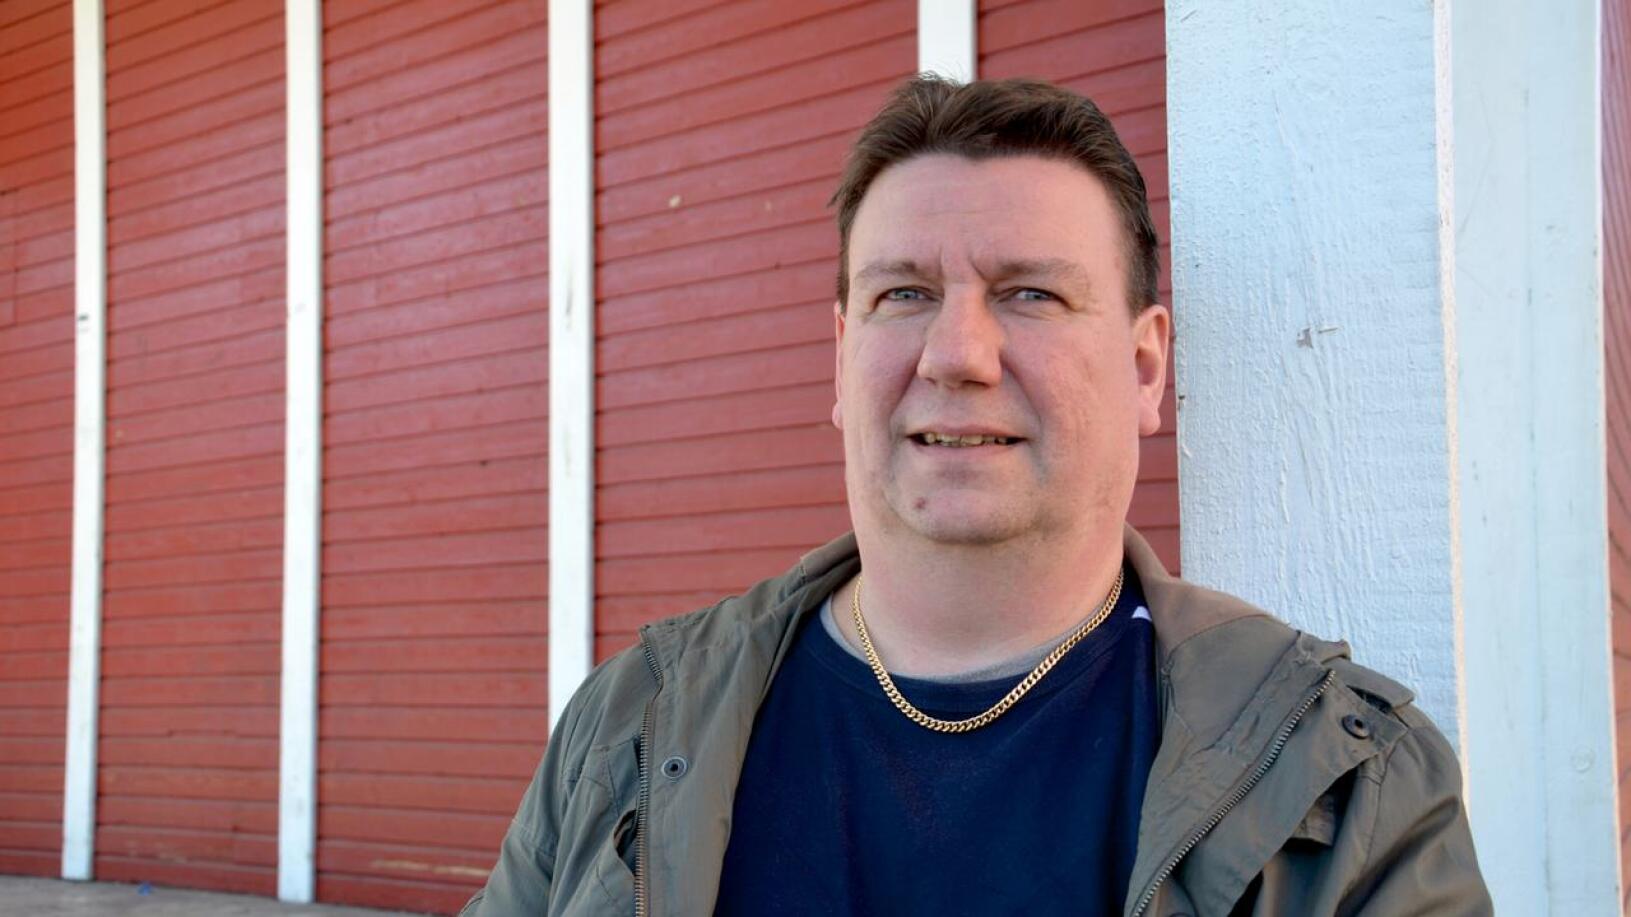 Oulaistelainen Jari Männikkö valittiin SDP:n piirihallituksen varapuheenjohtajaksi.